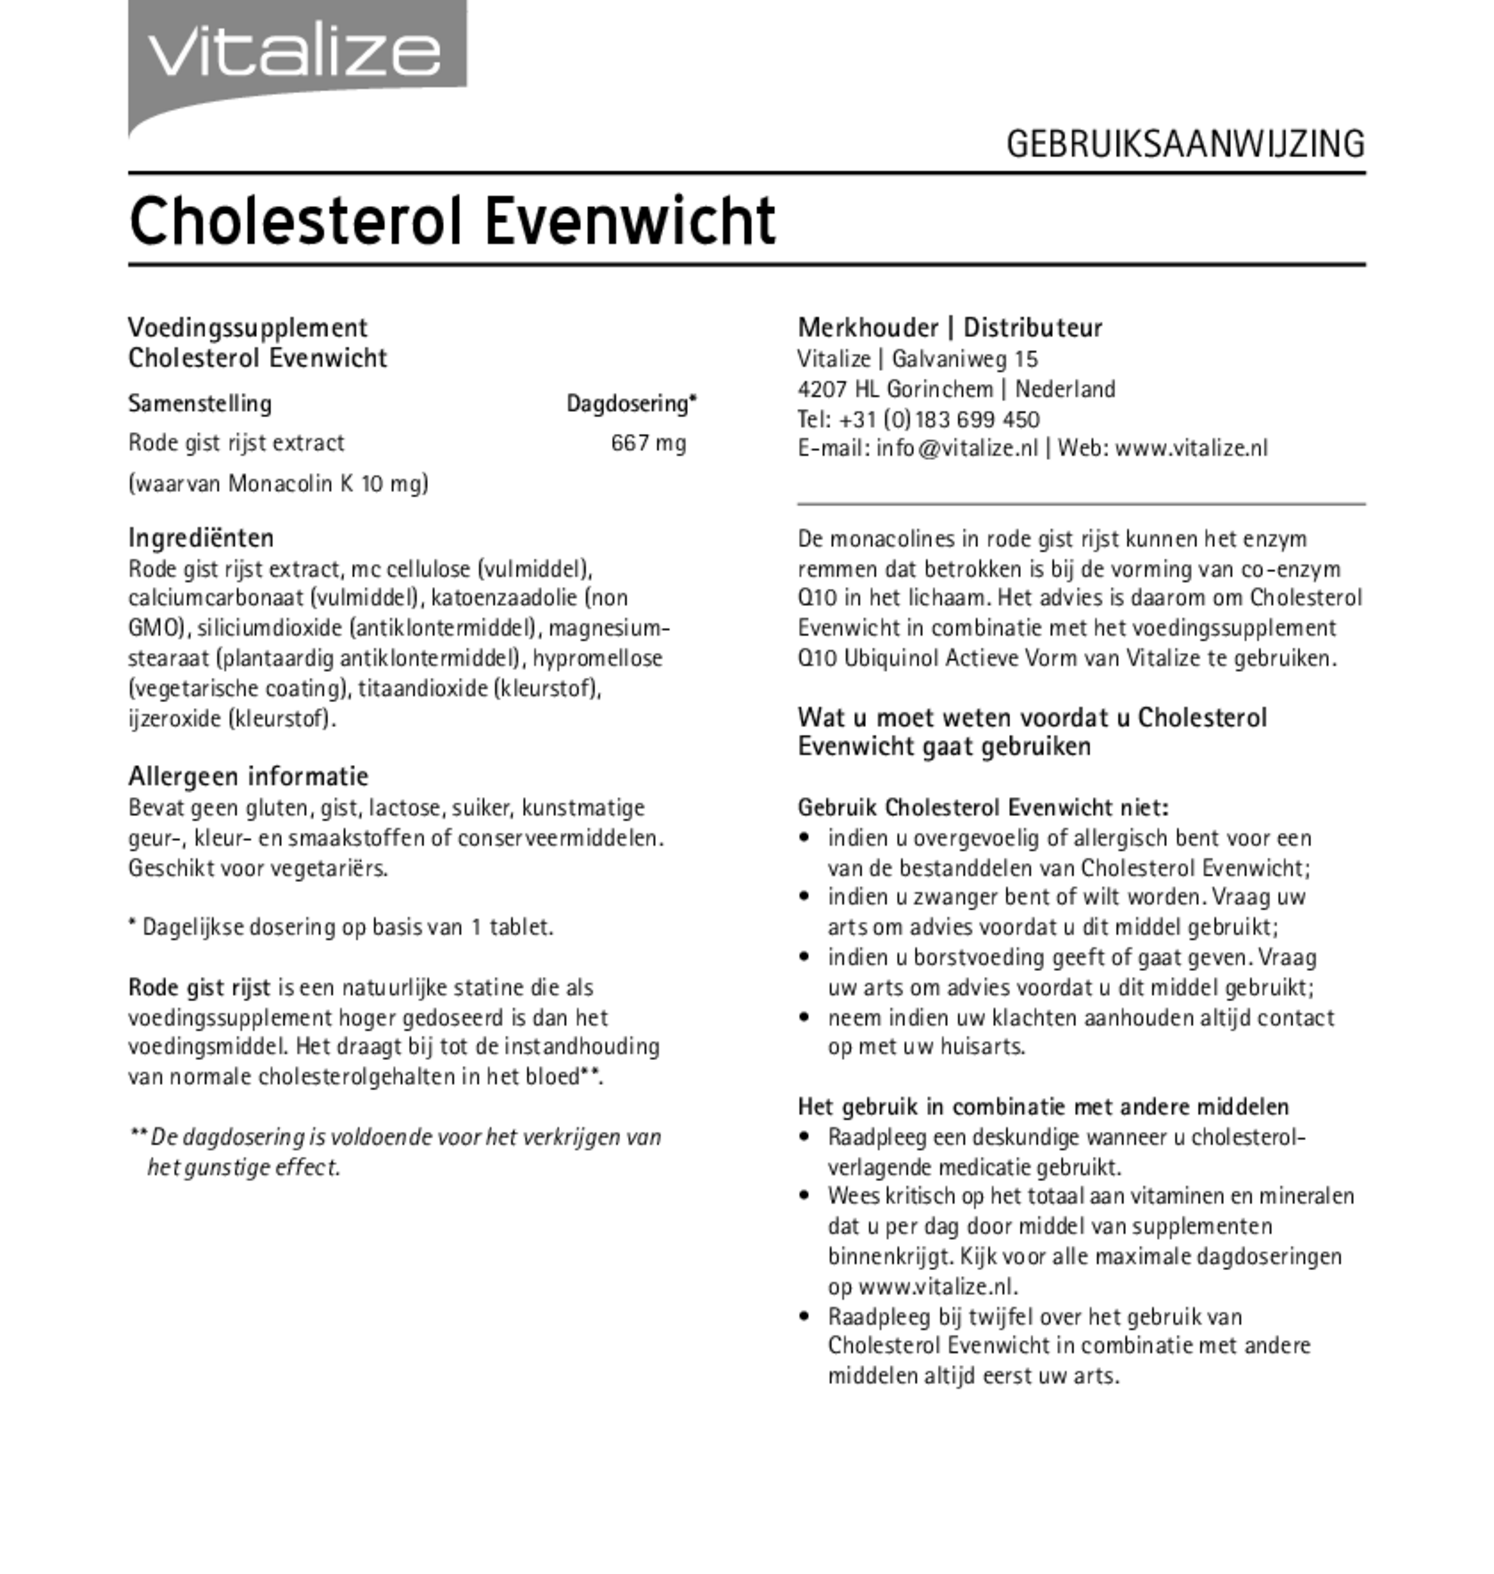 Cholesterol Evenwicht Tabletten afbeelding van document #1, gebruiksaanwijzing